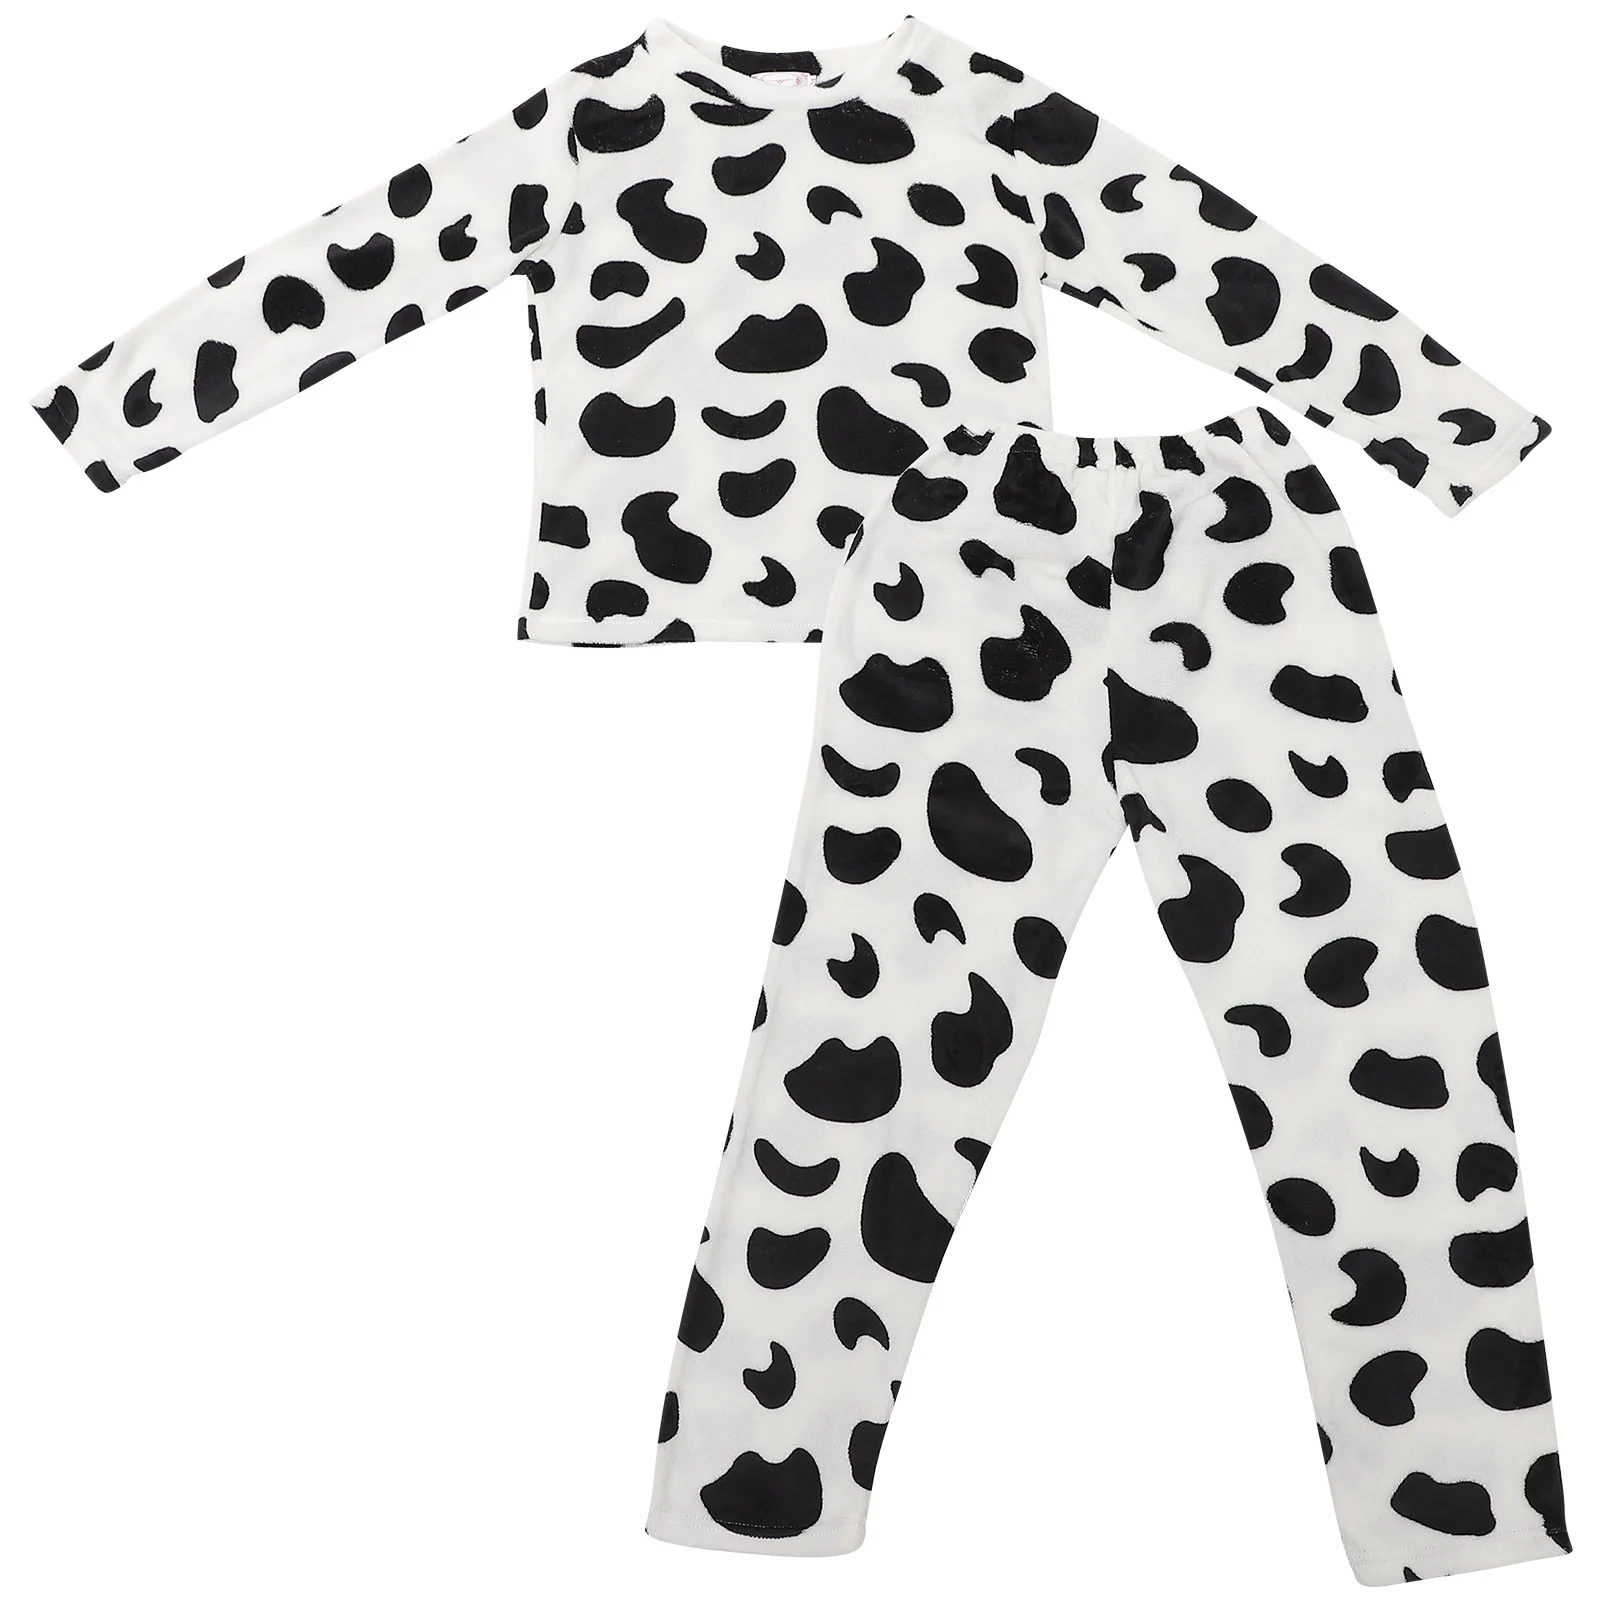 

Fuzzy Cow Pajama Womens 2 Pieces Pyjamas Set Flannel Sleepwear Loungewear